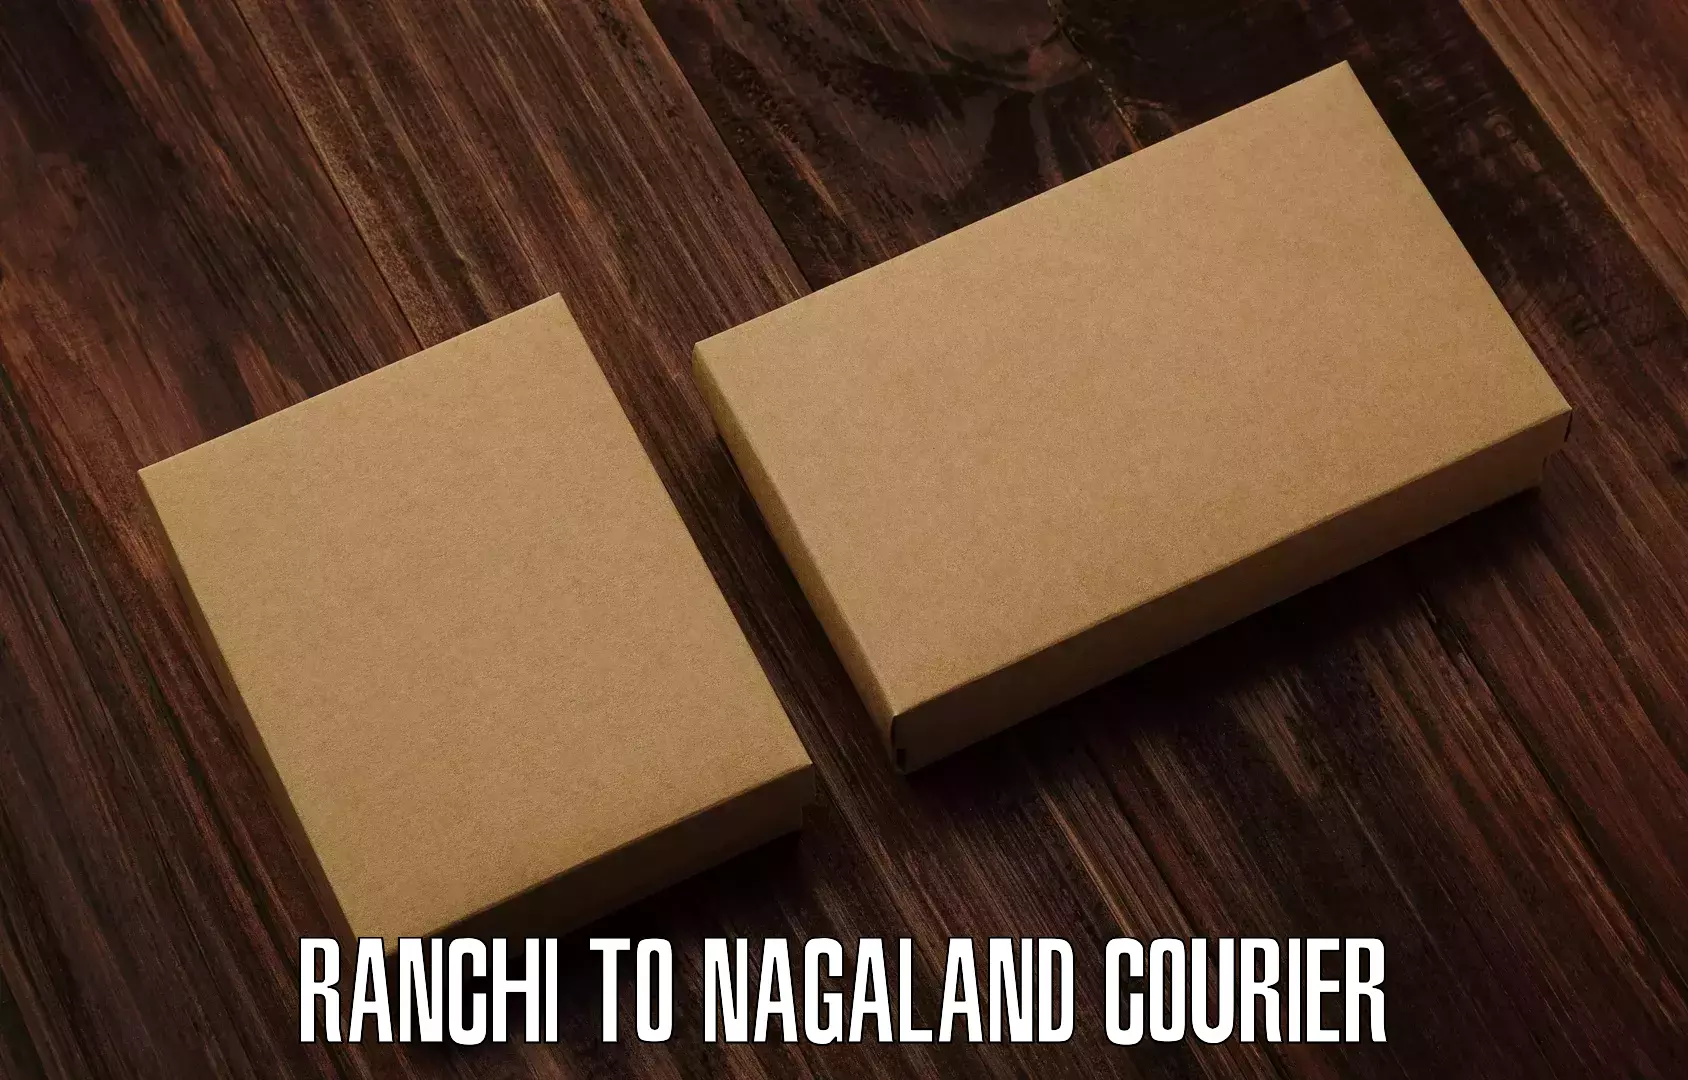 Express courier facilities Ranchi to Nagaland